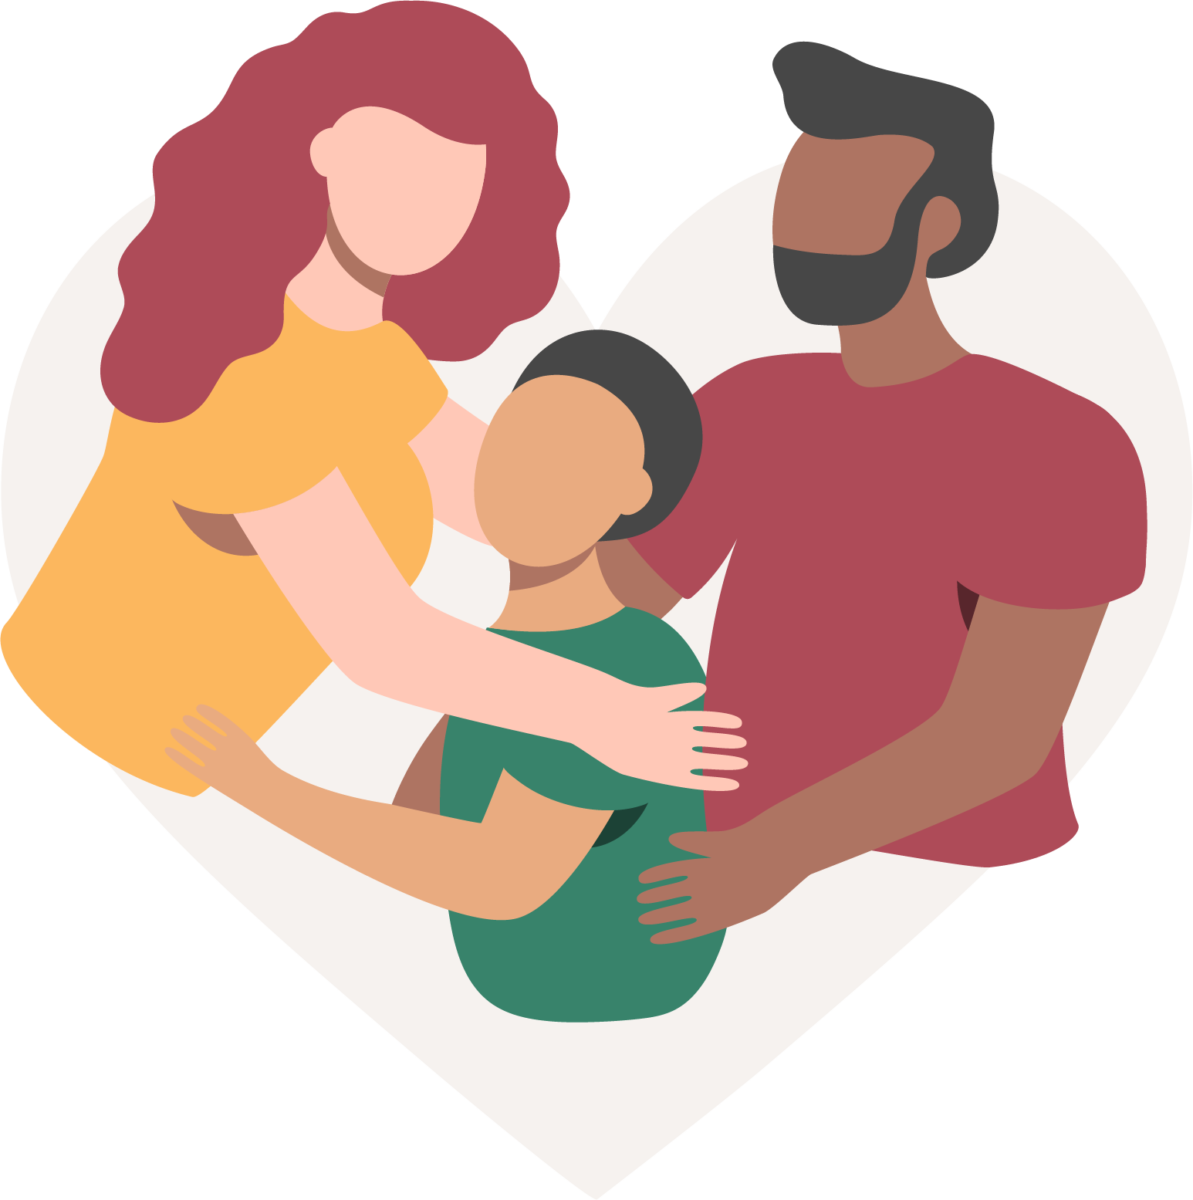 Người phụ nữ tóc đỏ áo vàng và người đàn ông tóc đen râu ôm đứa trẻ áo xanh tóc đen tượng trưng cho sự đoàn kết gia đình